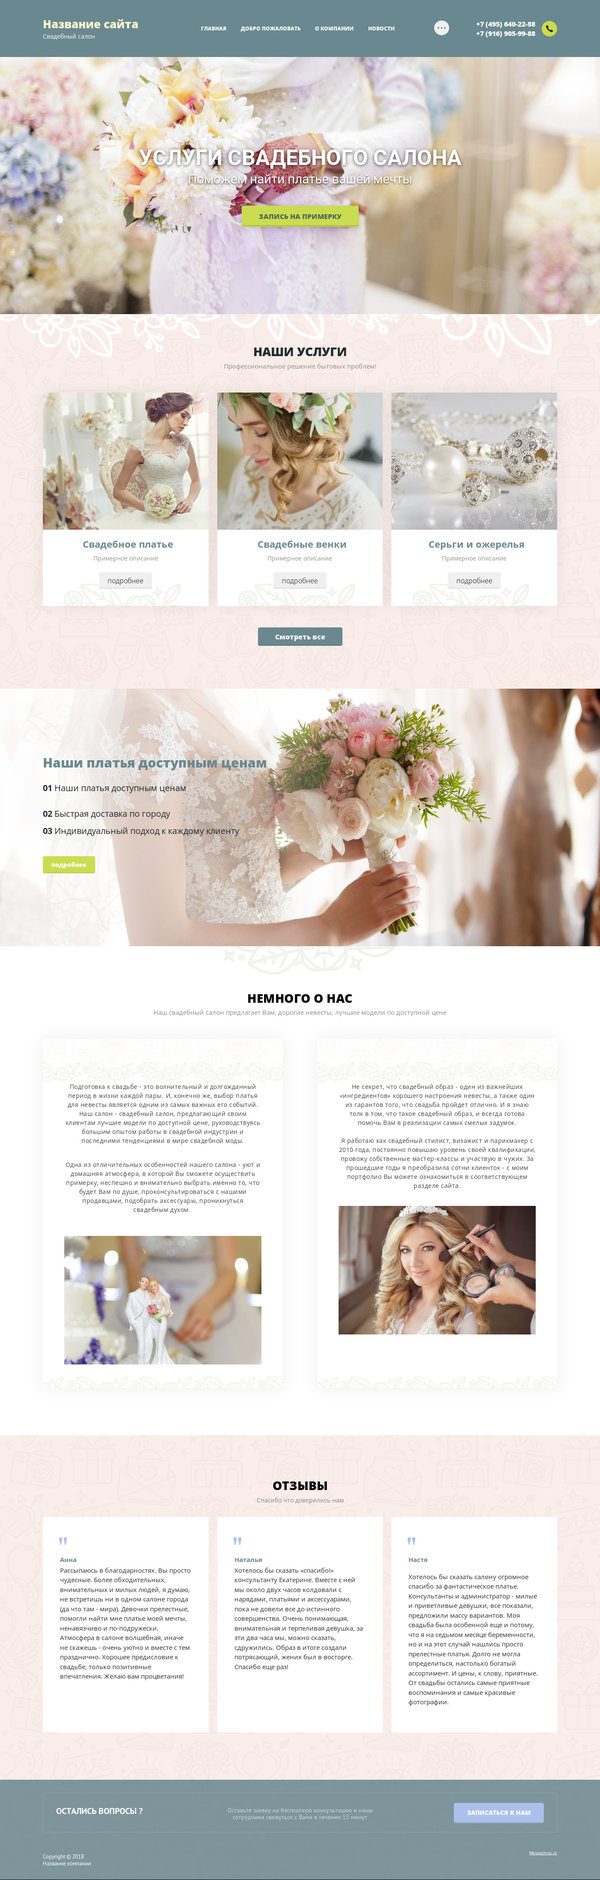 Готовый Сайт-Бизнес № 2014565 - Услуги свадебного салона (Десктопная версия)